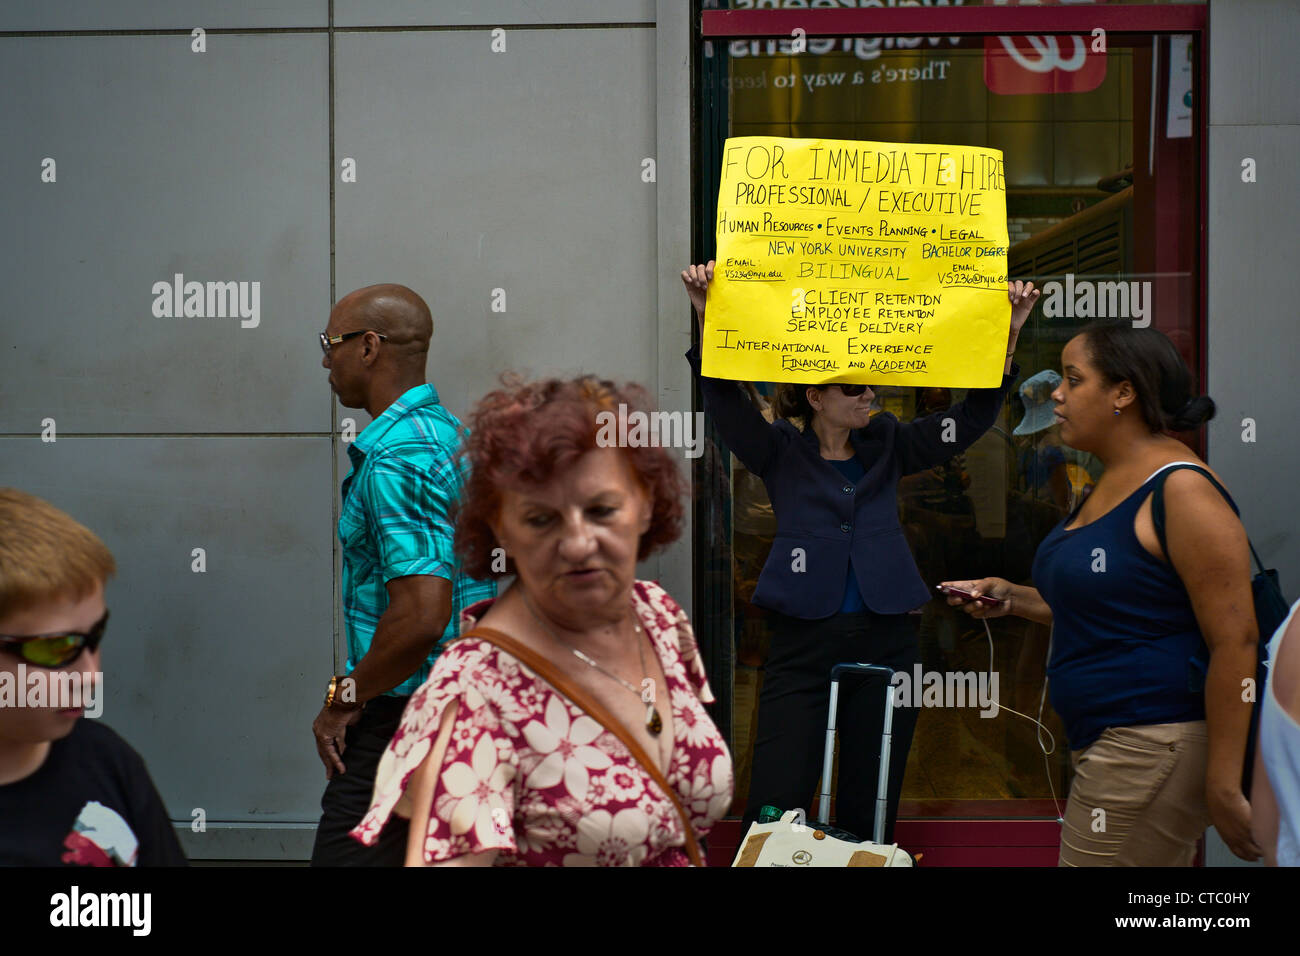 Menschen vorbeigehen, Vilmarie Santos, der sagt, dass sie arbeitslos ist, hält ein Schild auf Arbeitssuche, in der Nähe von Times Square, New York, NY, Vereinigte Staaten Stockfoto